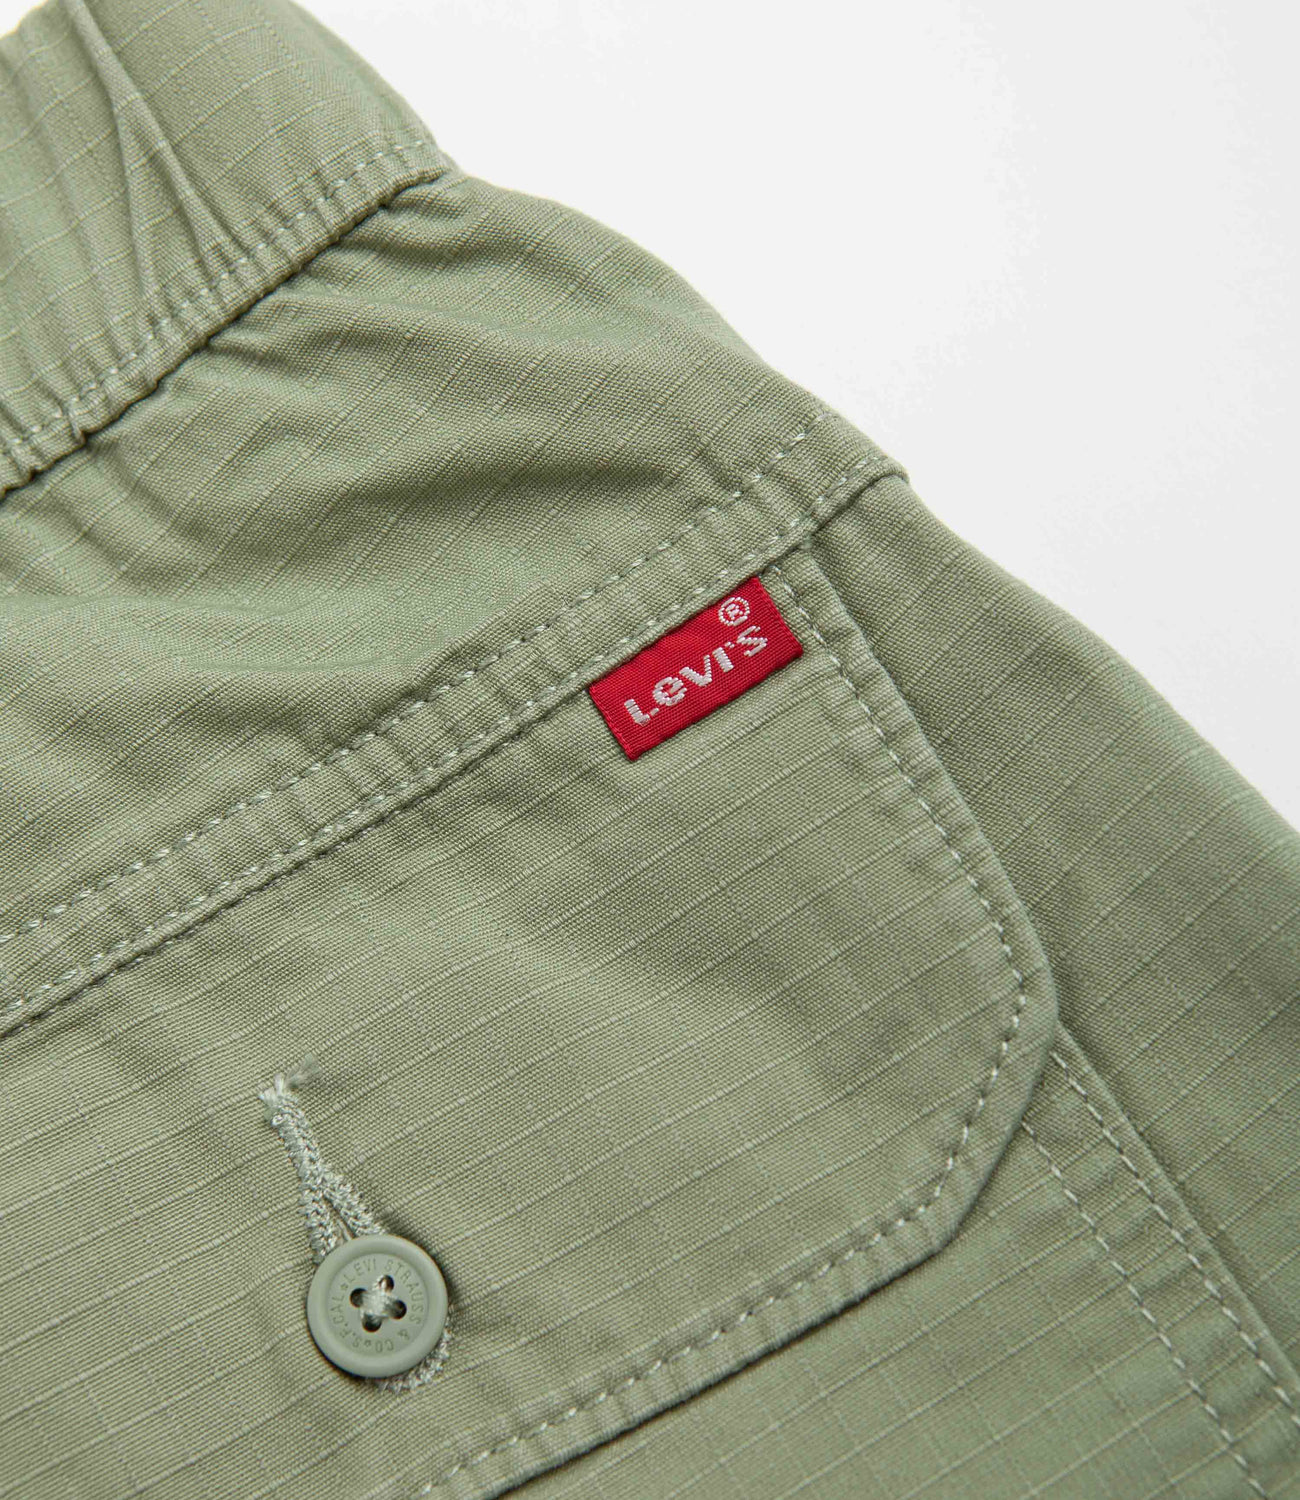 Vintage Levi's - Low-rise Khaki Cargo Pants. Marked... - Depop